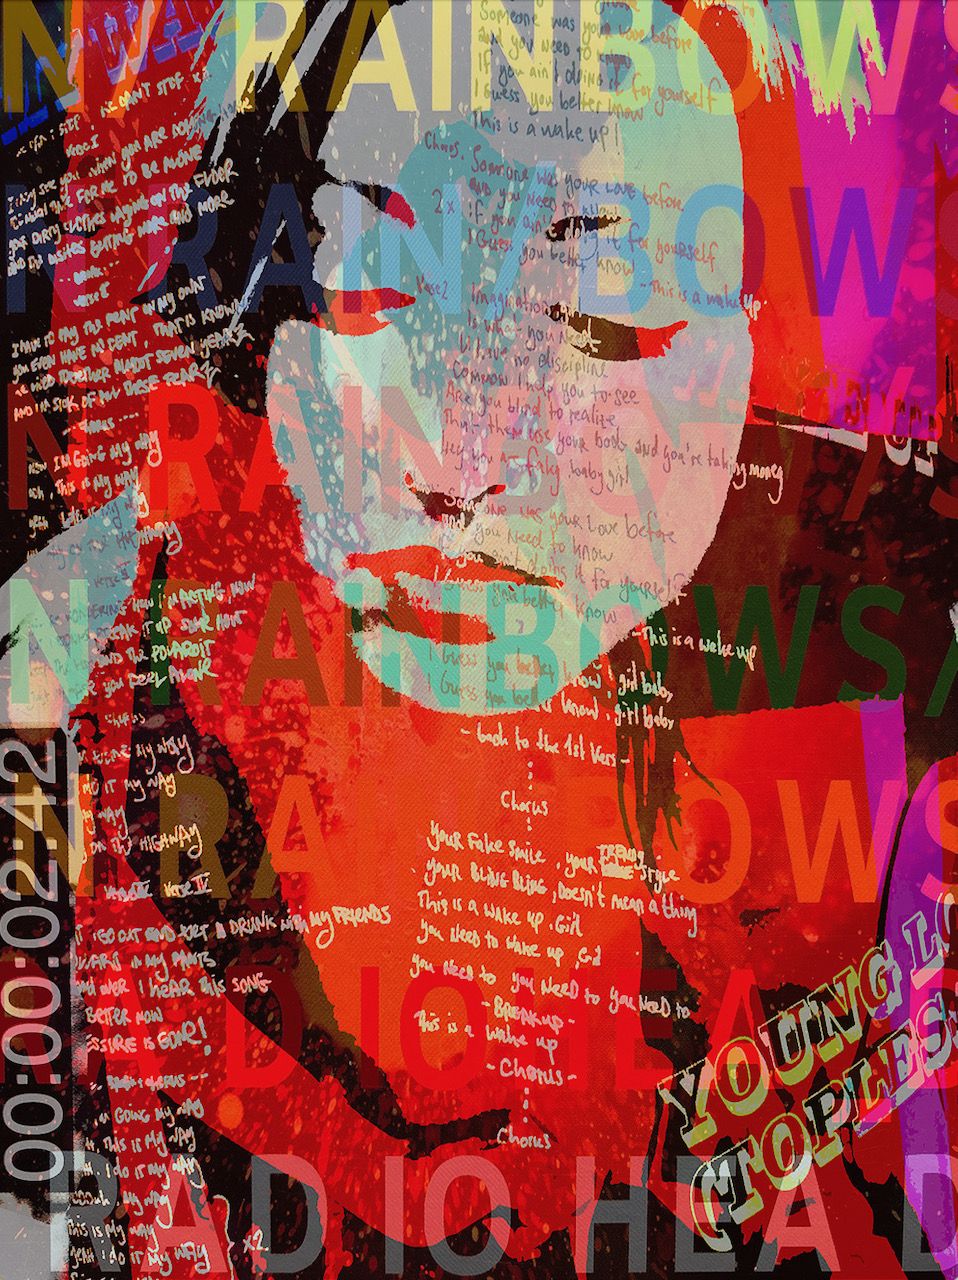 Ute Bruno abstrakte Collage Frauen Portrait und bunte Typographie Flächen